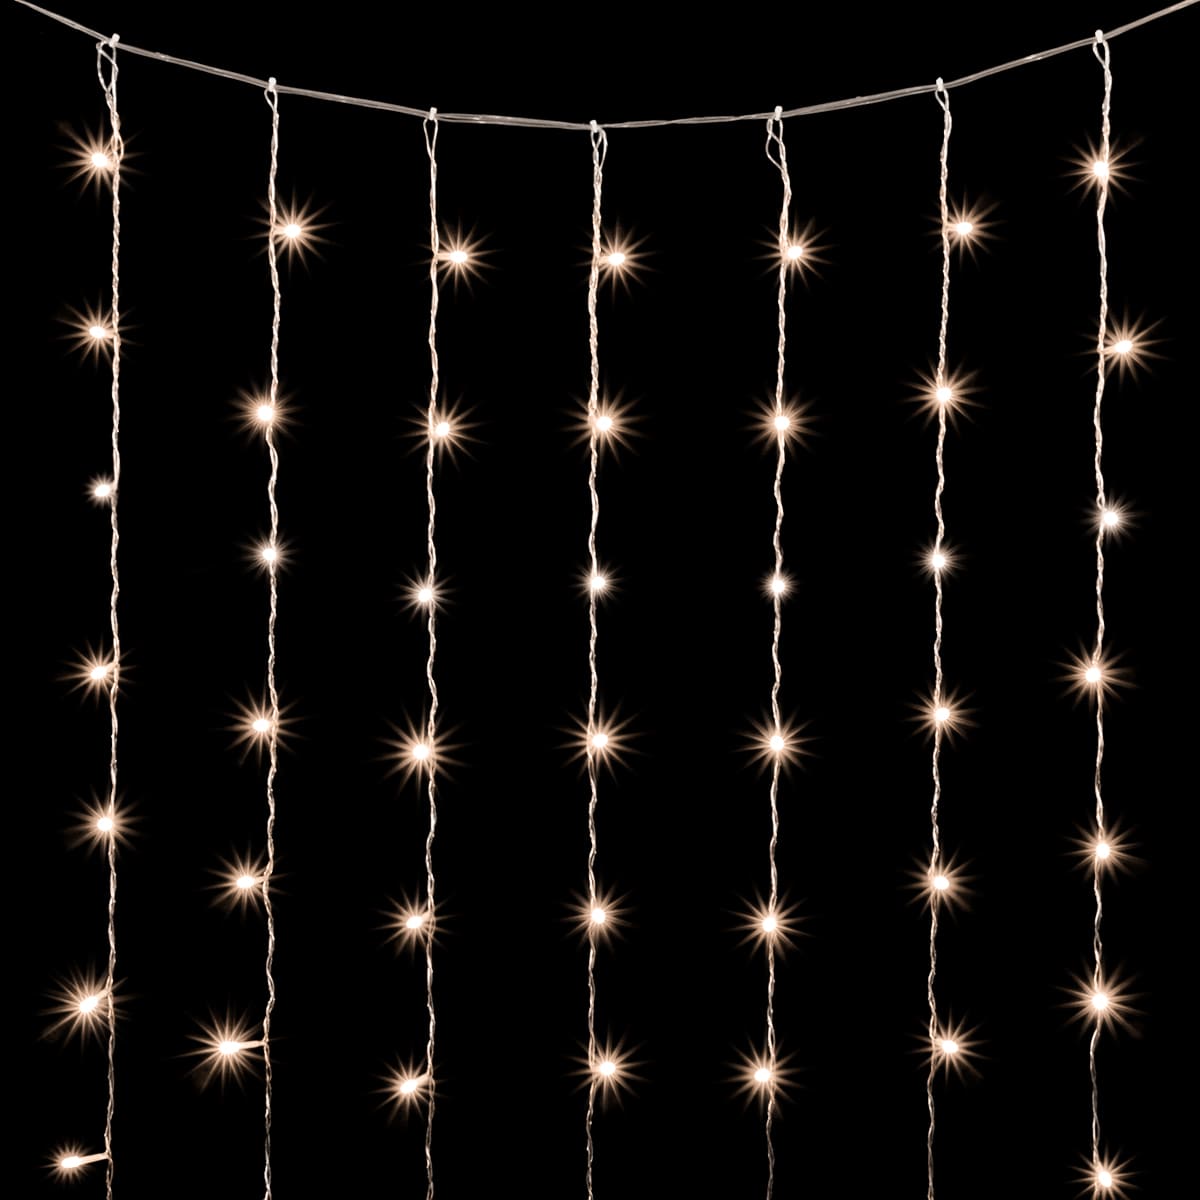 

Гирлянда Занавес 2 x 3 м Тепло-Белый с Мерцанием Белого Диода 220В, 600 LED, Провод Прозрачный ПВХ, IP20 01-134, 01-134